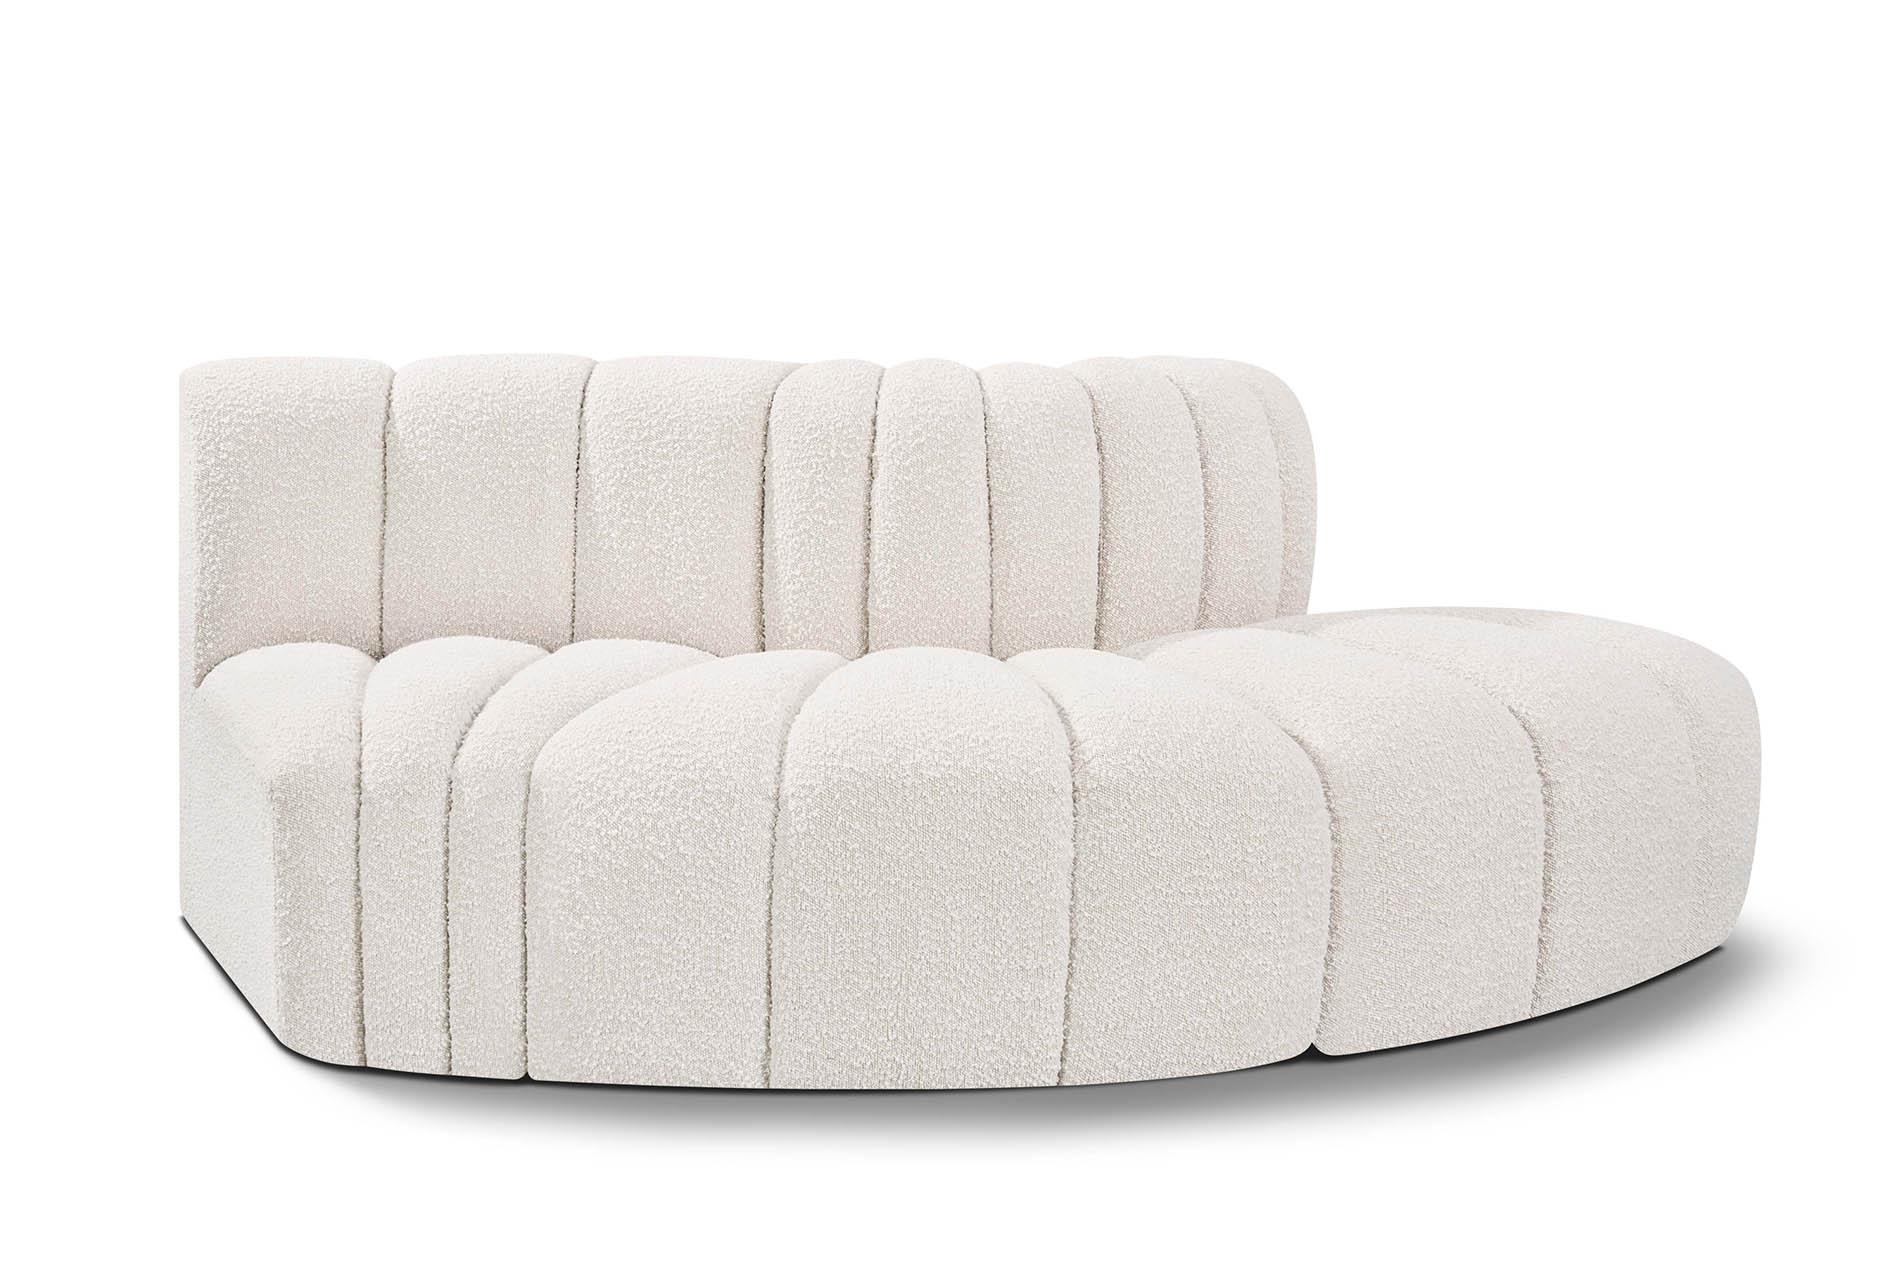 Contemporary, Modern Modular Sectional Sofa ARC 102Cream-S3E 102Cream-S3E in Cream 